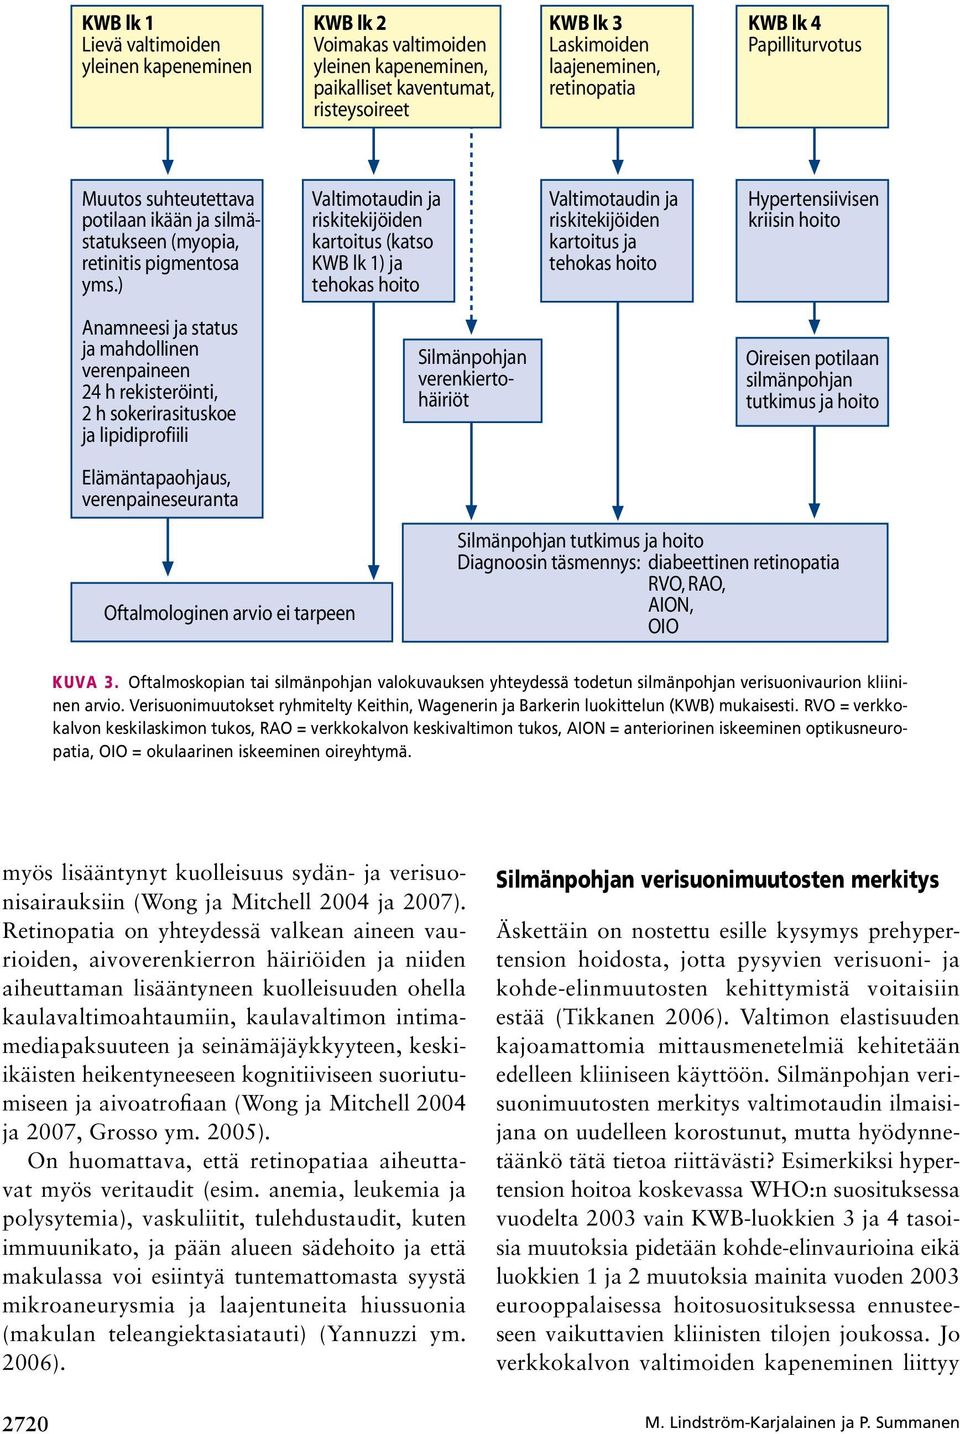 ) Valtimotaudin ja riskitekijöiden kartoitus (katso KWB lk 1) ja tehokas hoito Valtimotaudin ja riskitekijöiden kartoitus ja tehokas hoito Hypertensiivisen kriisin hoito Anamneesi ja status ja